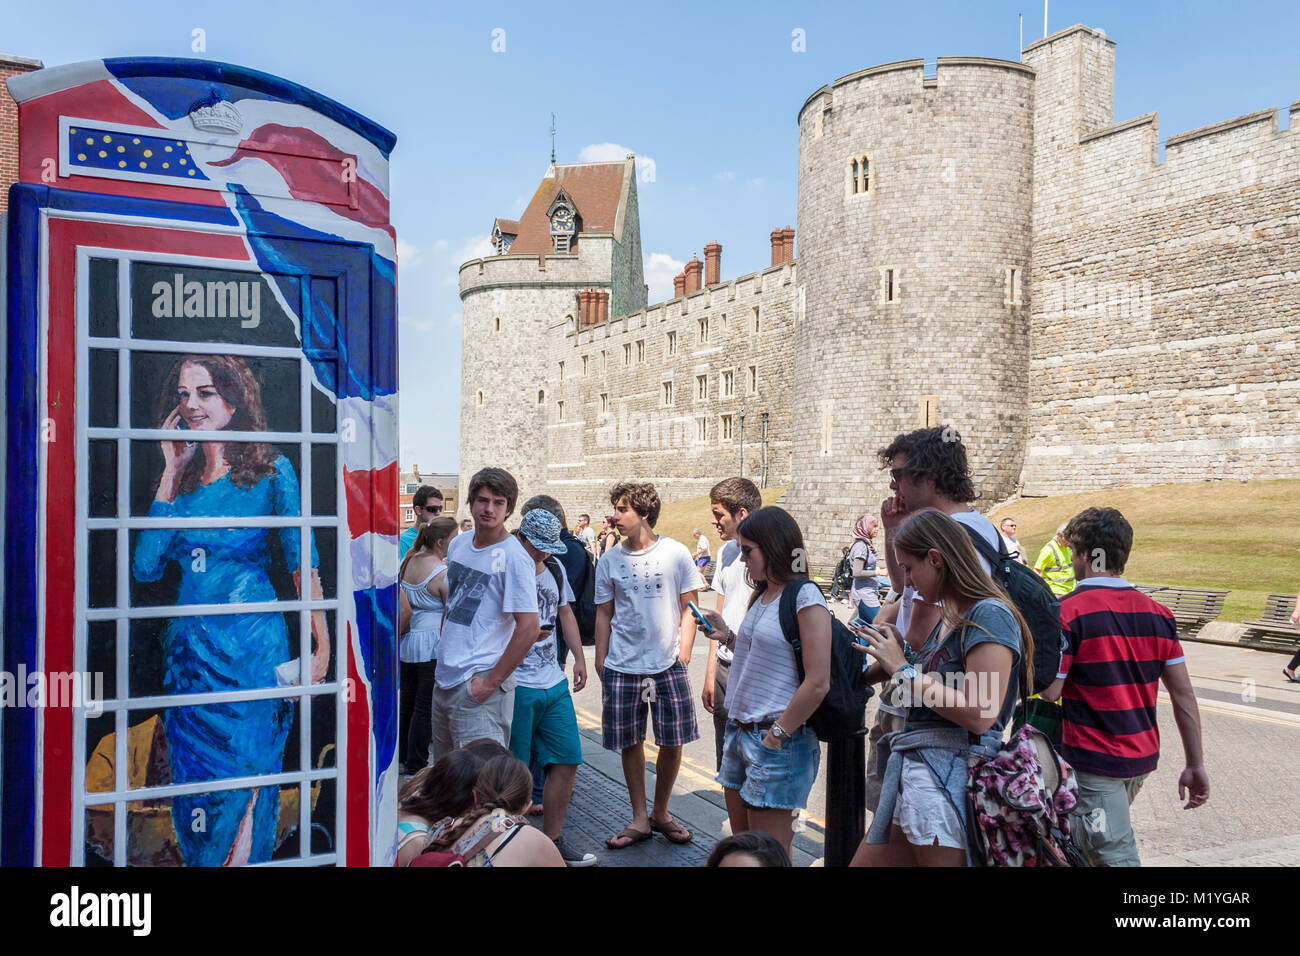 Les touristes regarder les téléphones portables à l'extérieur d'un téléphone traditionnel fort peint avec un portrait de Kate Middleton, duchesse de Cambridge, parler Banque D'Images